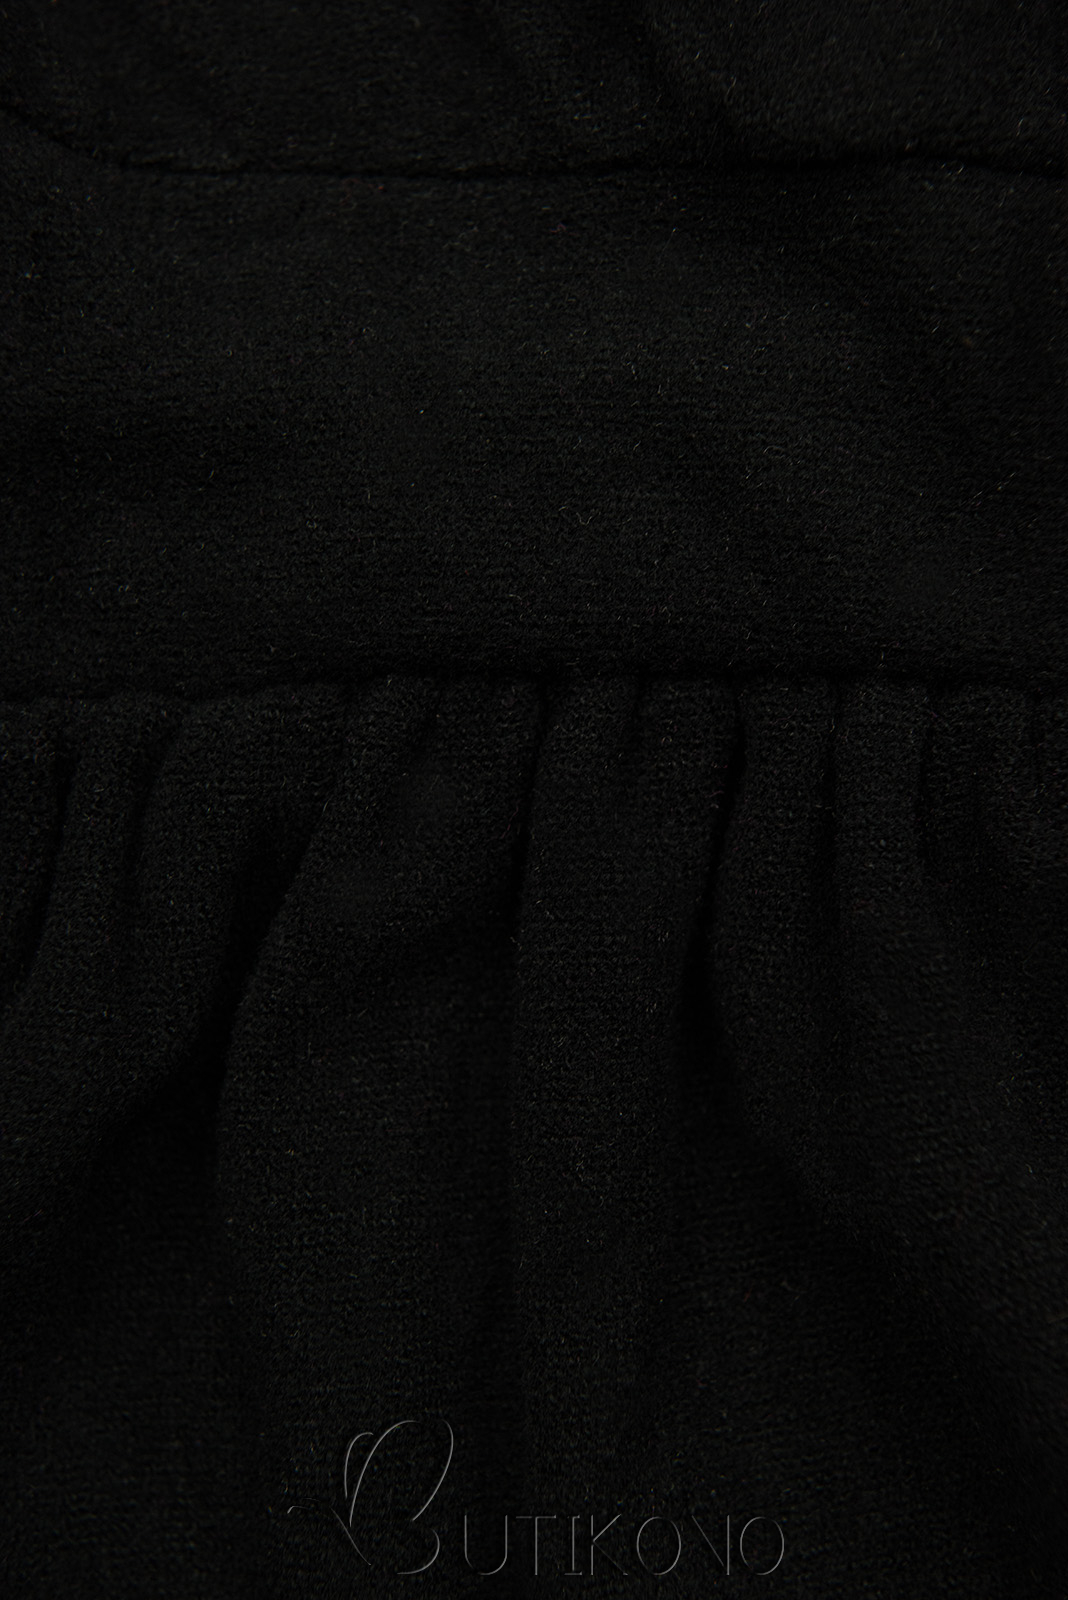 Čierne krátke šaty s čipkou